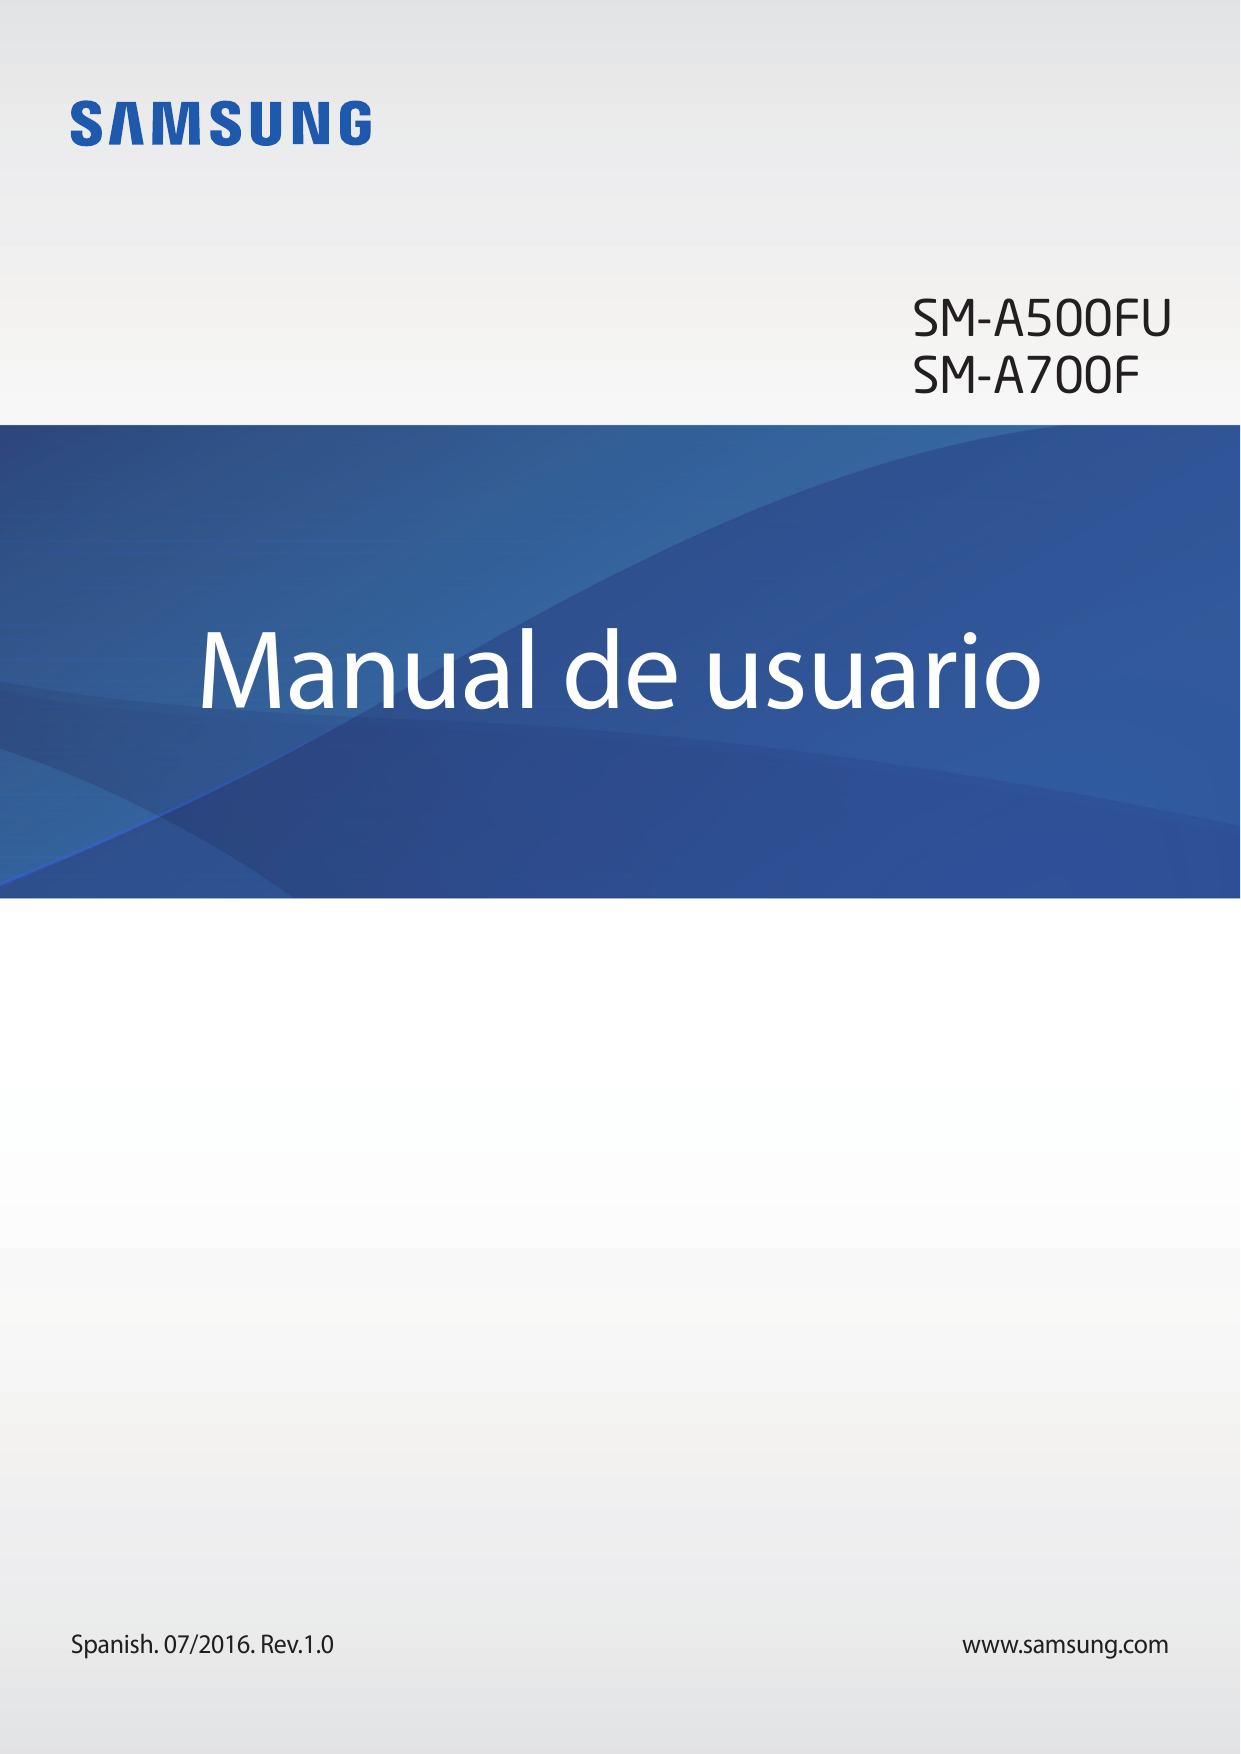 SM-A500FUSM-A700FManual de usuarioSpanish. 07/2016. Rev.1.0www.samsung.com